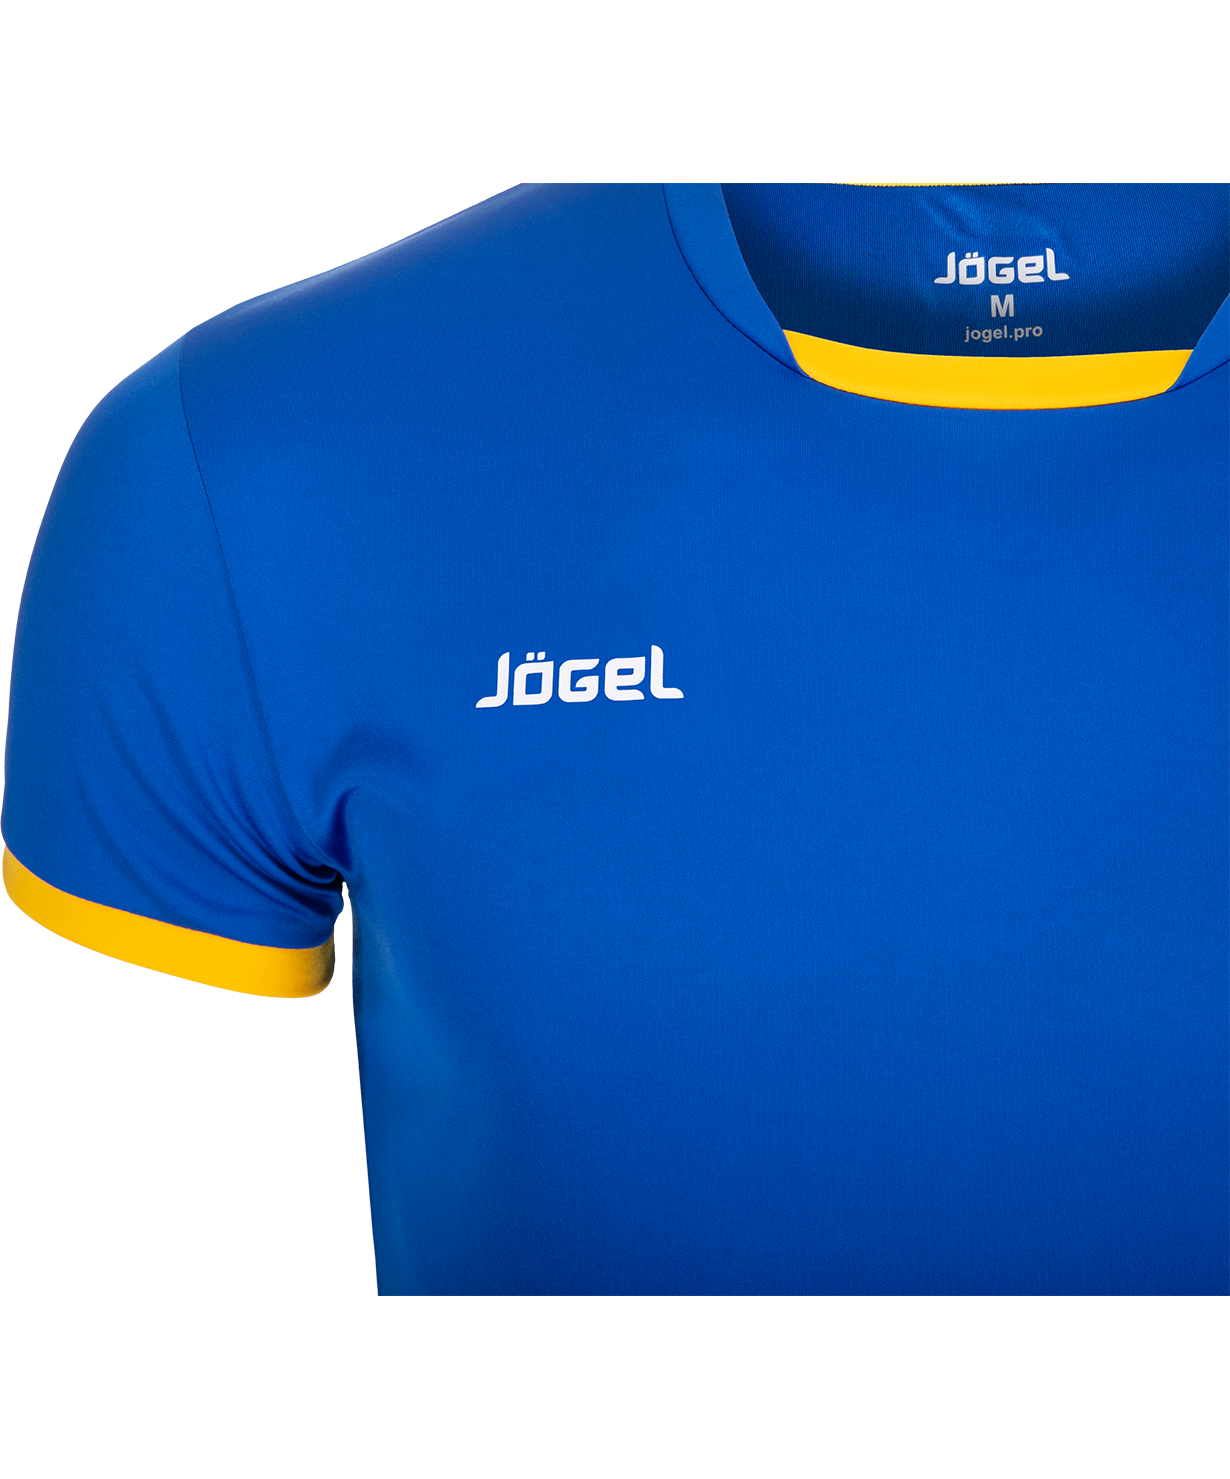 Jogel купить форму. Jogel футболка спортивная. Футболка Jogel желто синяя. Jogel волейбольная форма. Jogel футболки волейбол.